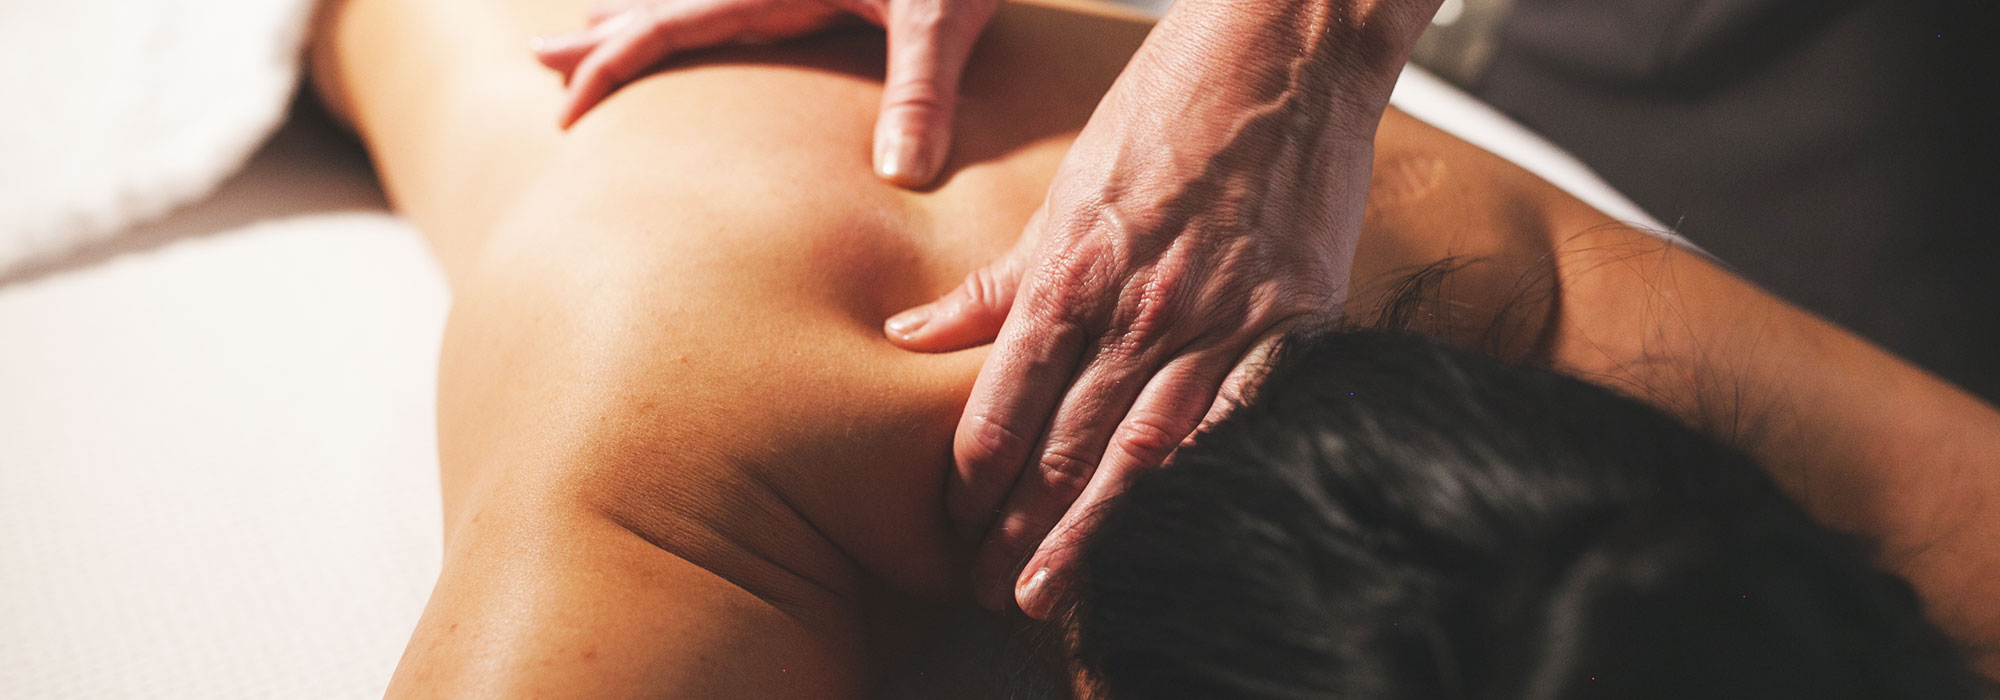 massagens para aliviar o estresse